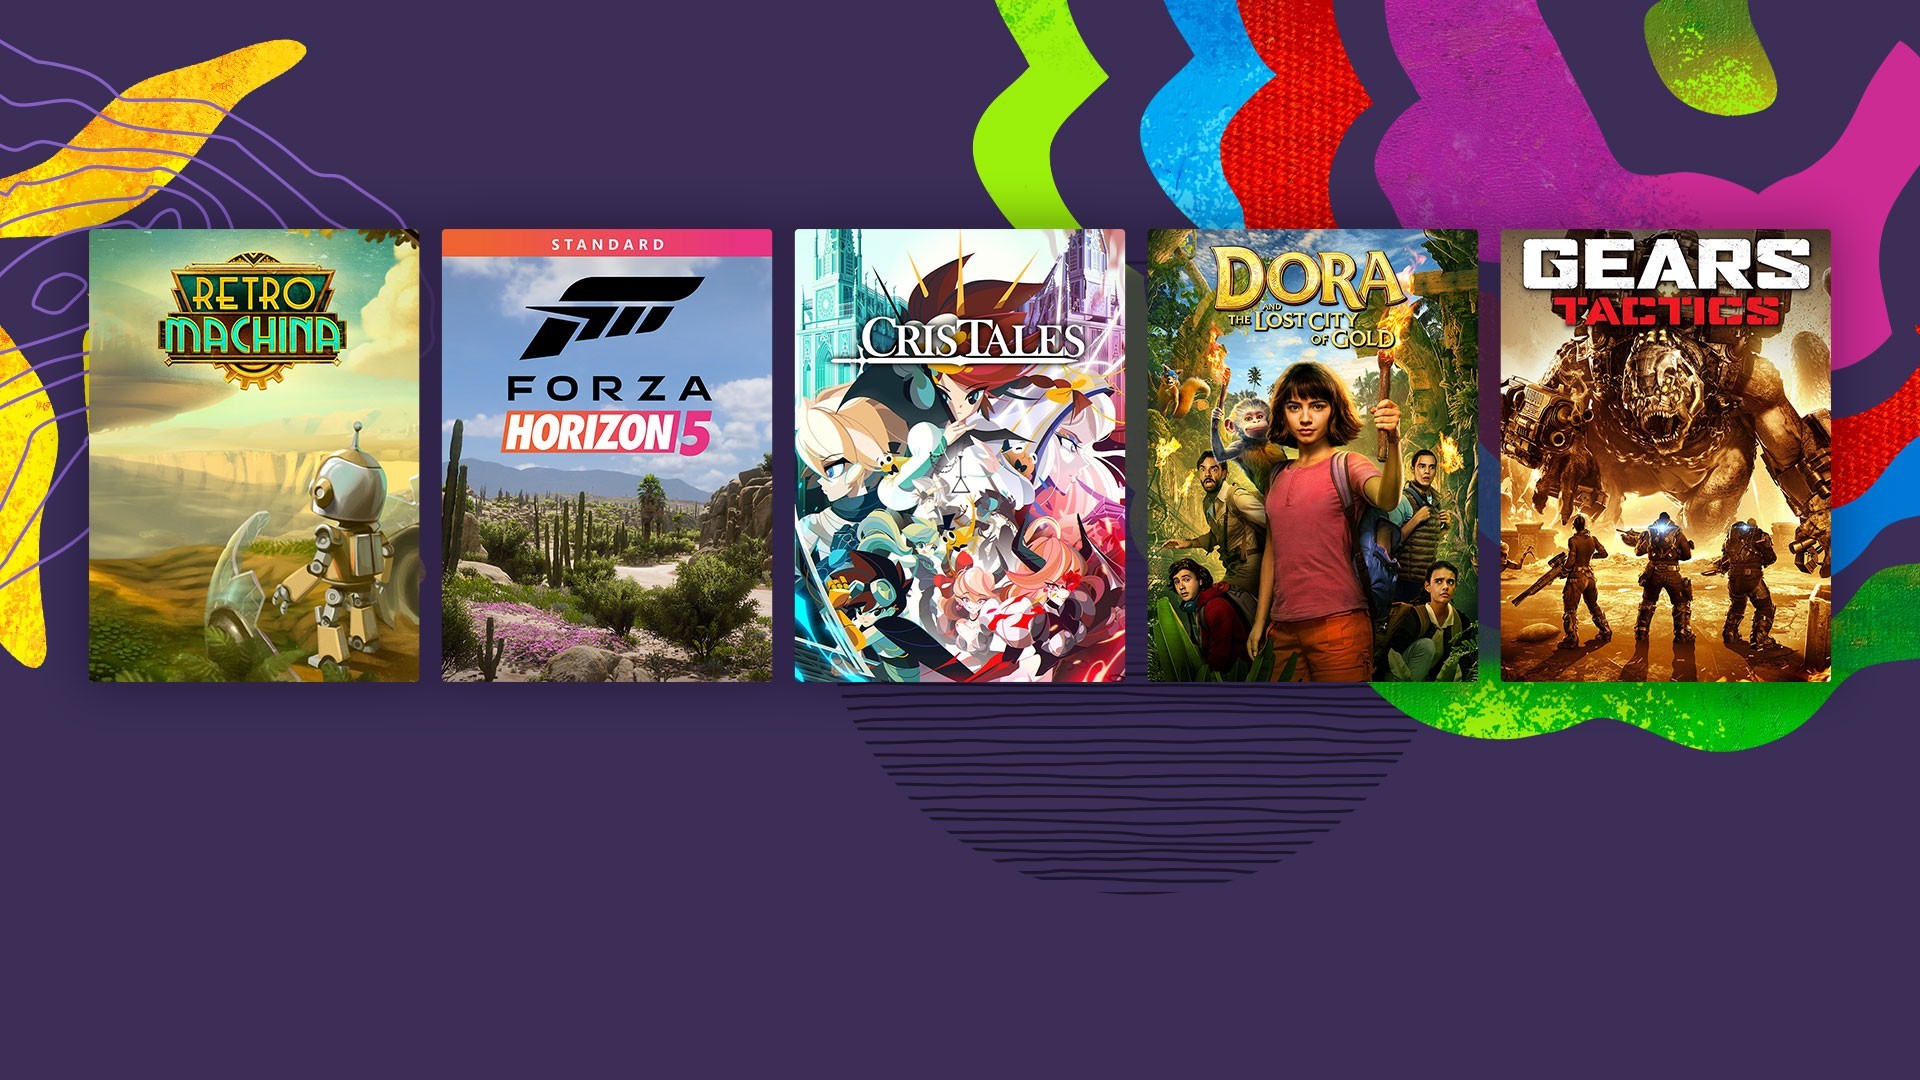 Descubra juegos, películas y televisión seleccionados por comunidades hispanas y latinas en Microsoft